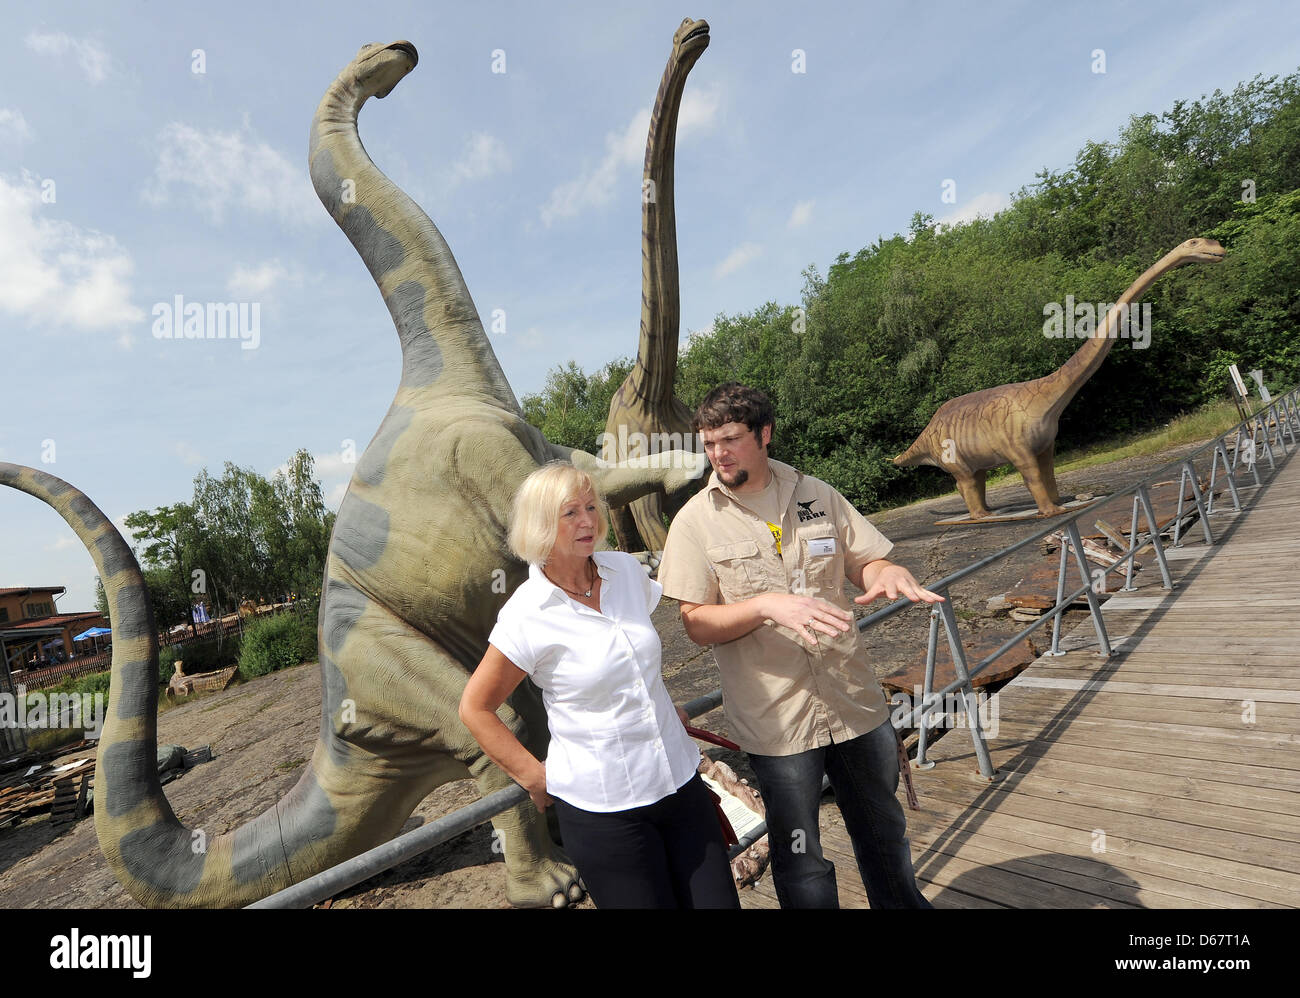 Ministro de Ciencia de Baja Sajonia Johanna Wanka (CDU, L) tiene jefe taxidermista Nils Knoetschke explicar algunos modelos de dinosaurios en el Museo al Aire Libre de dinosaurios en Muenchehagen, Alemania, 28 de junio de 2012. Un esqueleto completo de un Europasaurus es visto en el fondo. Wanka visitó varios sitios de excavación de dinosaurios en la Baja Sajonia. Foto: Holger Hollemann Foto de stock